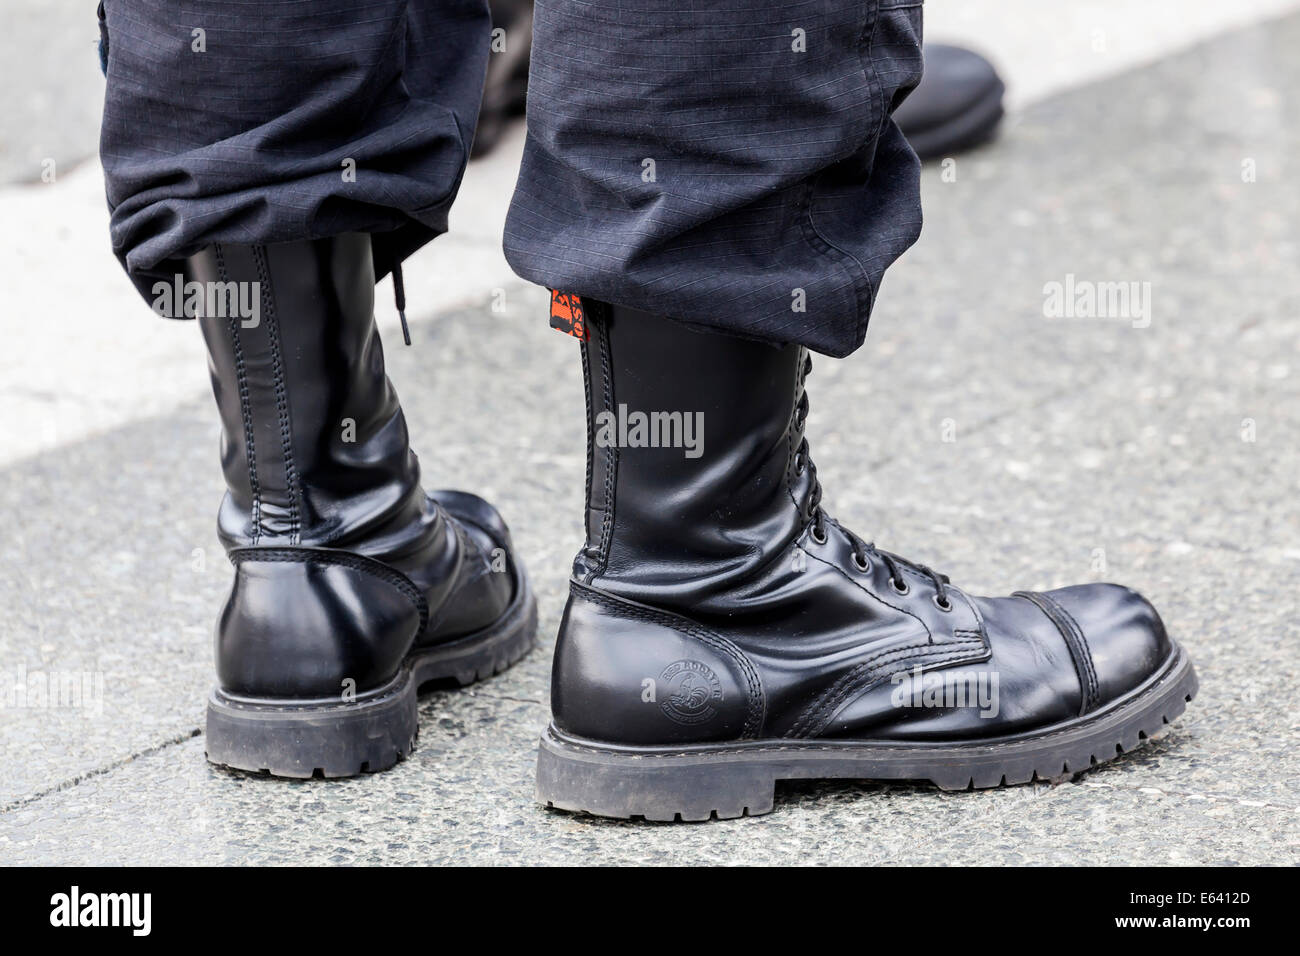 Miembro del derechista Partido Húngaro vistiendo botas de combate, imagen simbólica para el extremismo de derechas, Budapest, Hungría Foto de stock